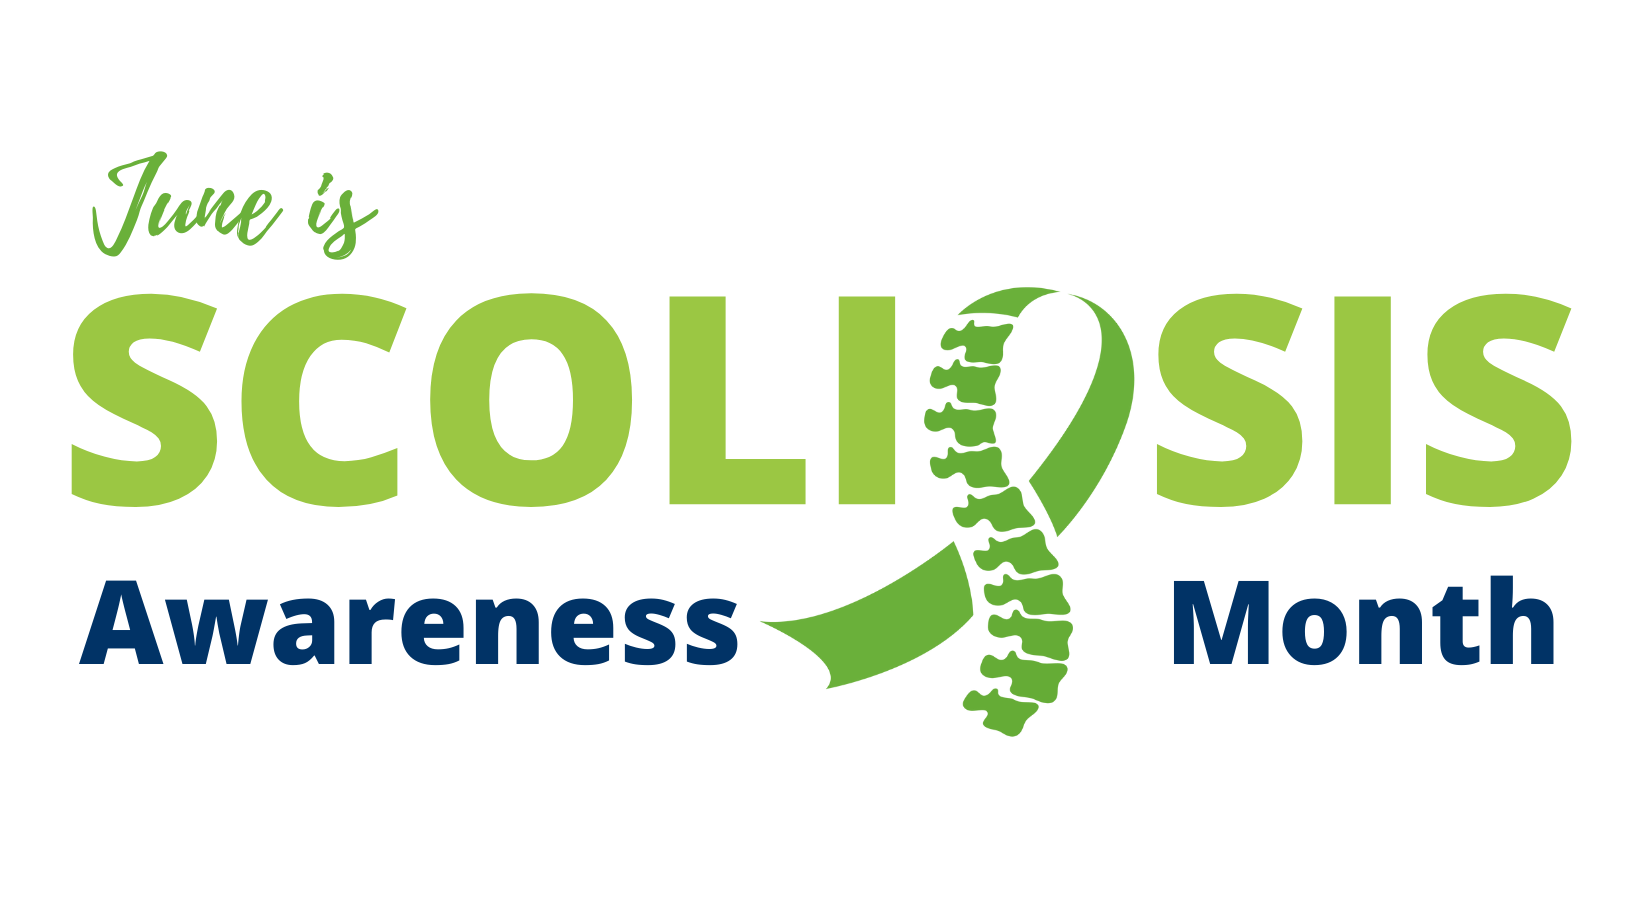 Mes de la Escoliosis | Junio es el mes de Concientización sobre la Escoliosis